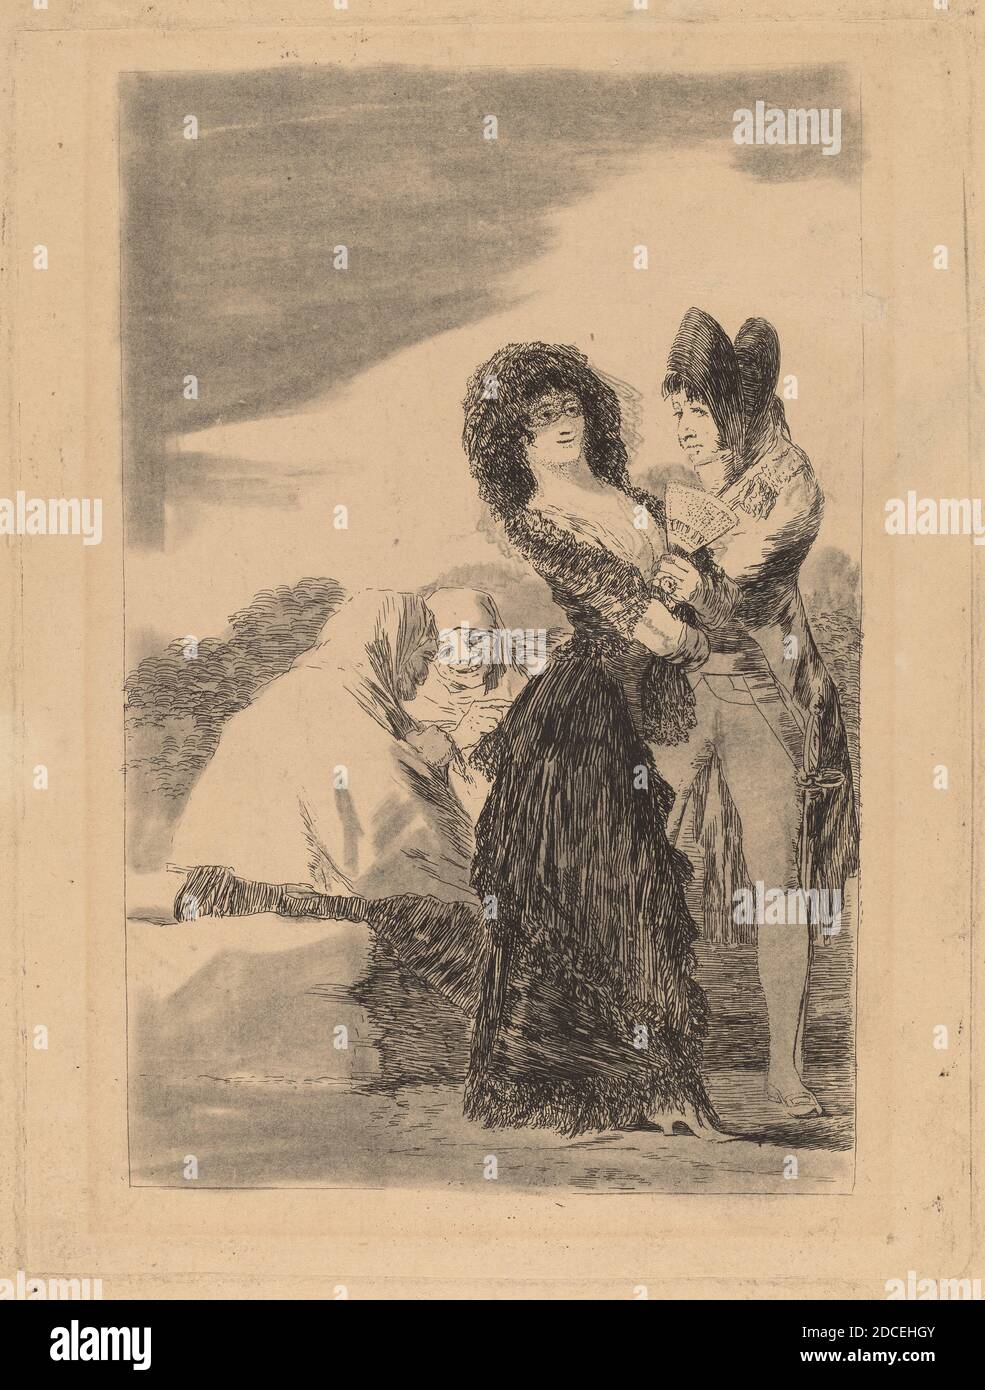 Francisco de Goya, (artista), Spagnolo, 1746 - 1828, tal para qual (due del genere), Los Caprichos (piatto 5), (serie), in o prima del 1799, incisione ritoccata con gesso nero, strofinata o inciampata, piatto: 19.9 x 15.1 cm (7 13/16 x 5 15/16 pollici), foglio: 25.6 x 18 cm (10 1/16 x 7 1/16 pollici Foto Stock